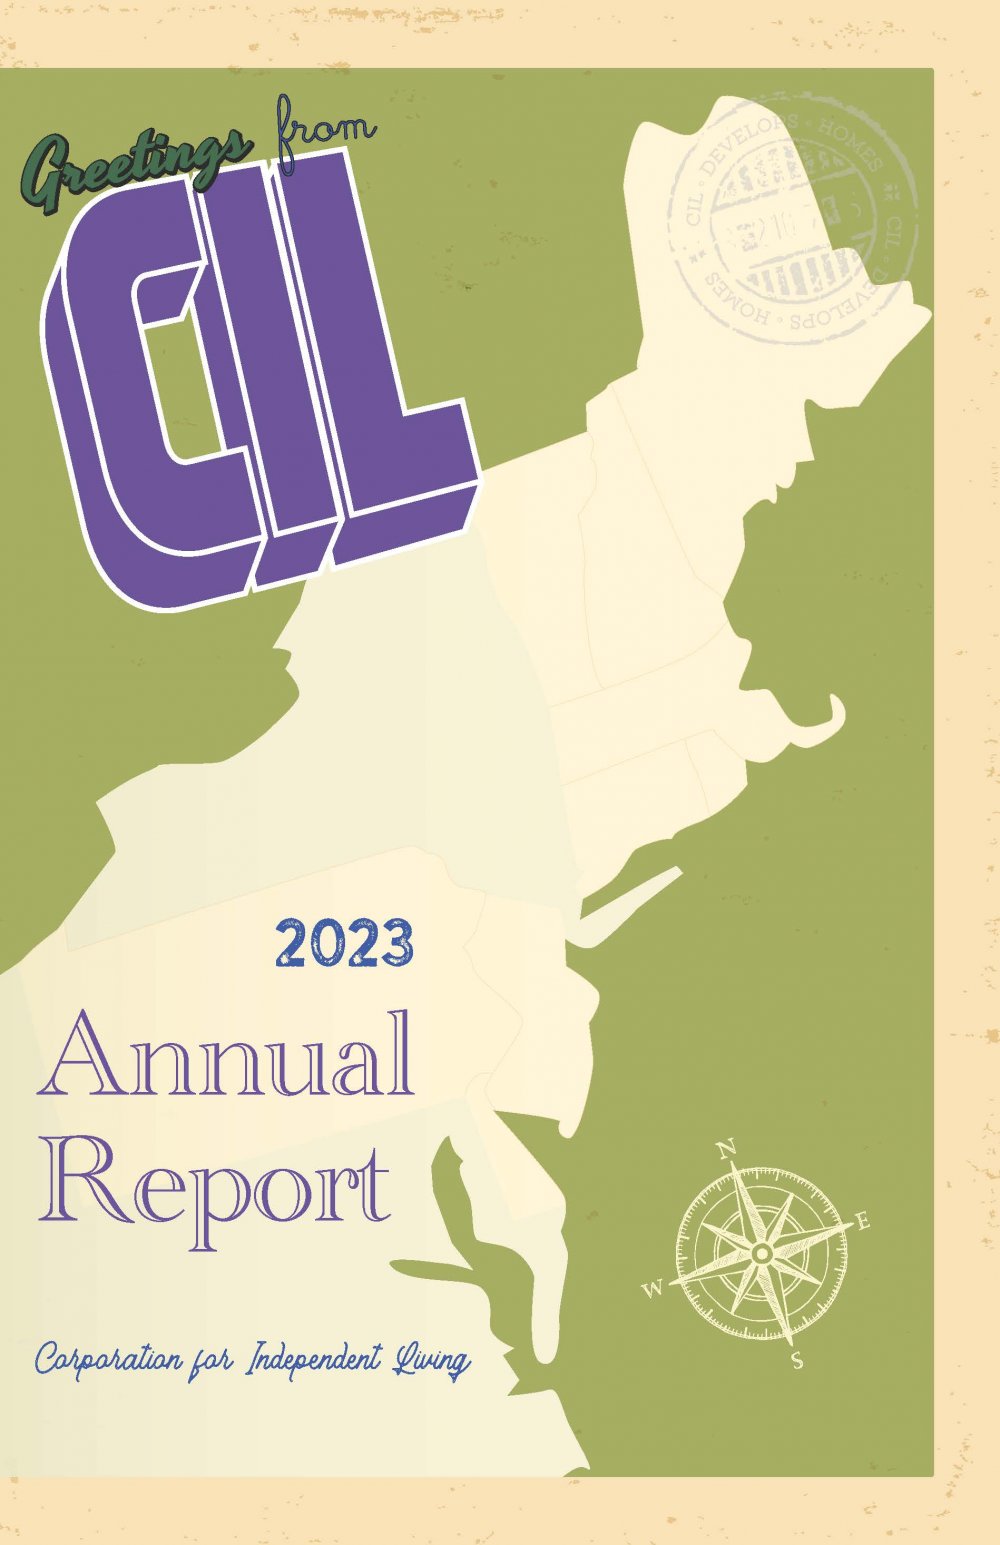 CIL 2023 Annual Report